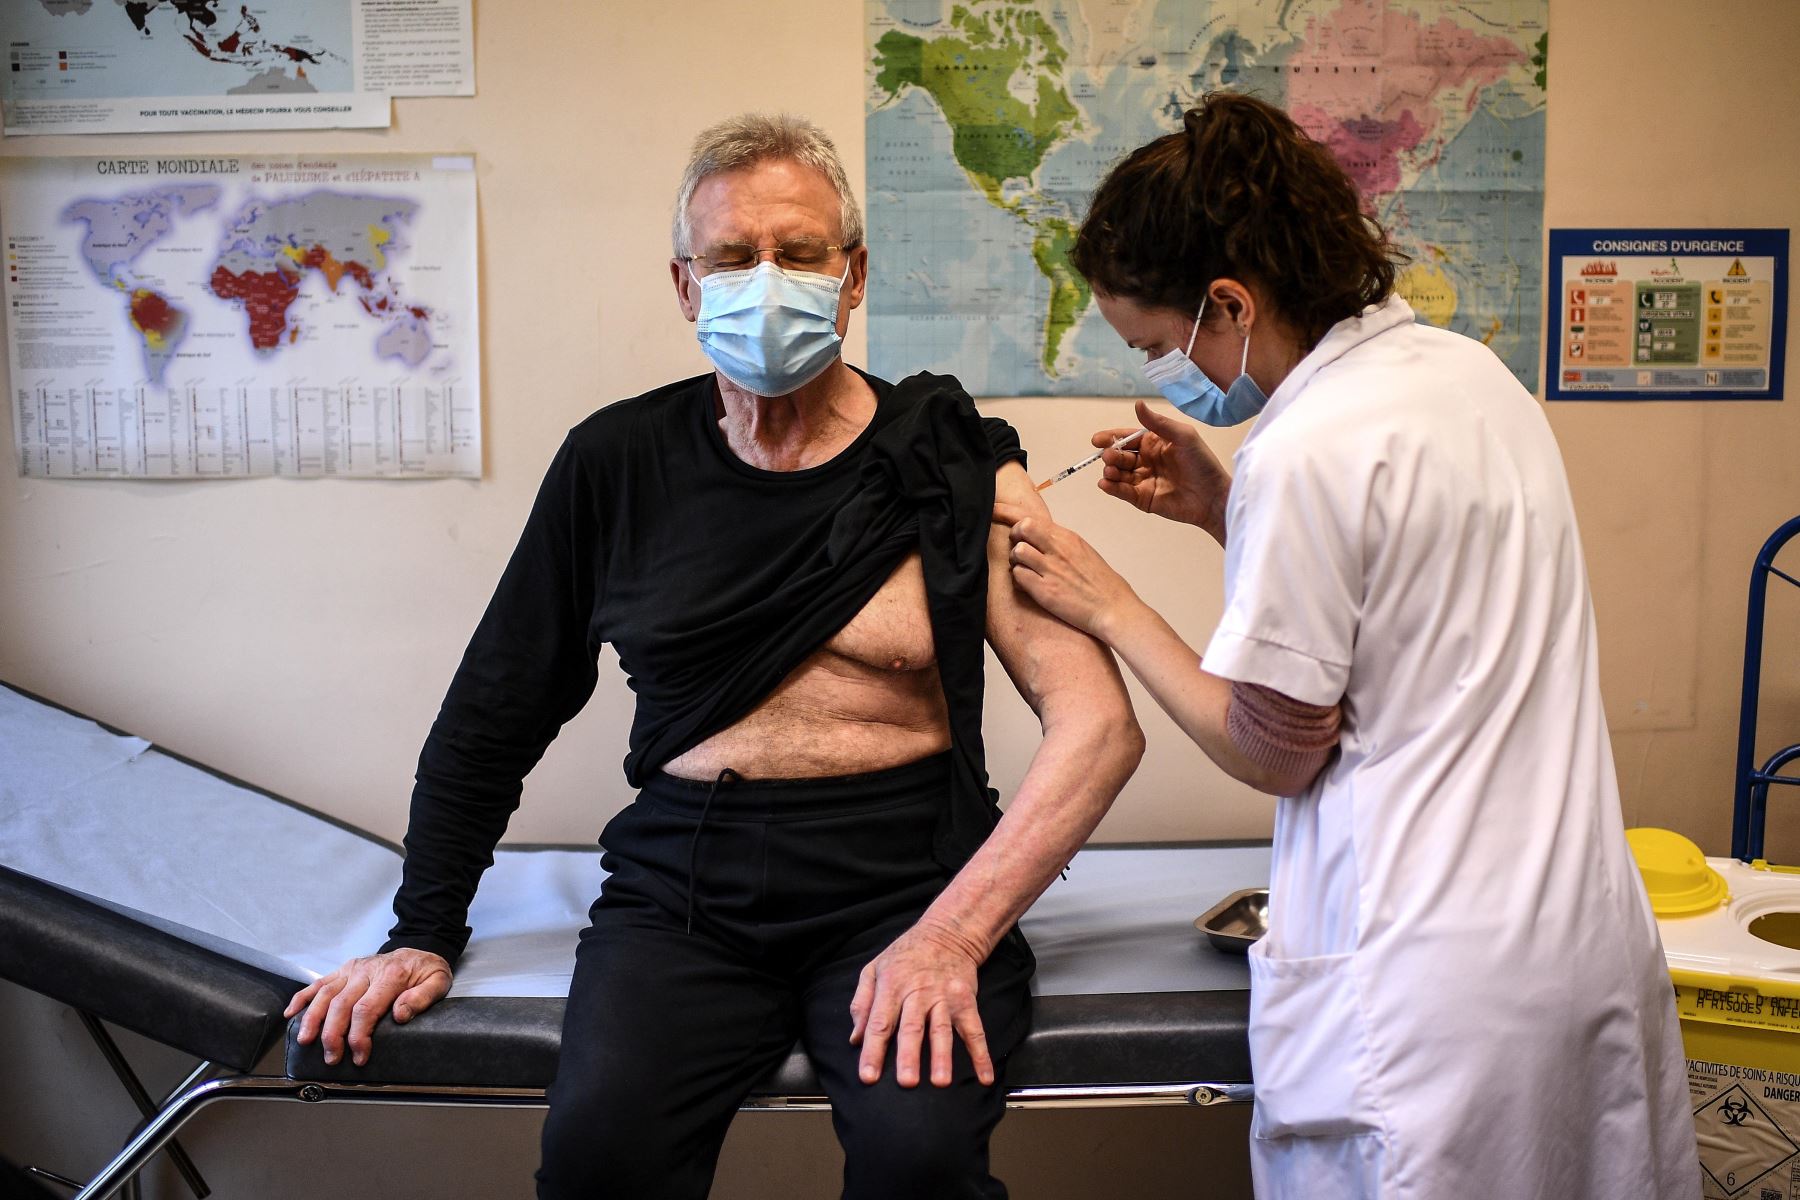 Un anciano de más de 75 años recibe una inyección de una vacuna Covid-19 en el Instituto Pasteur de París.
Foto: AFP